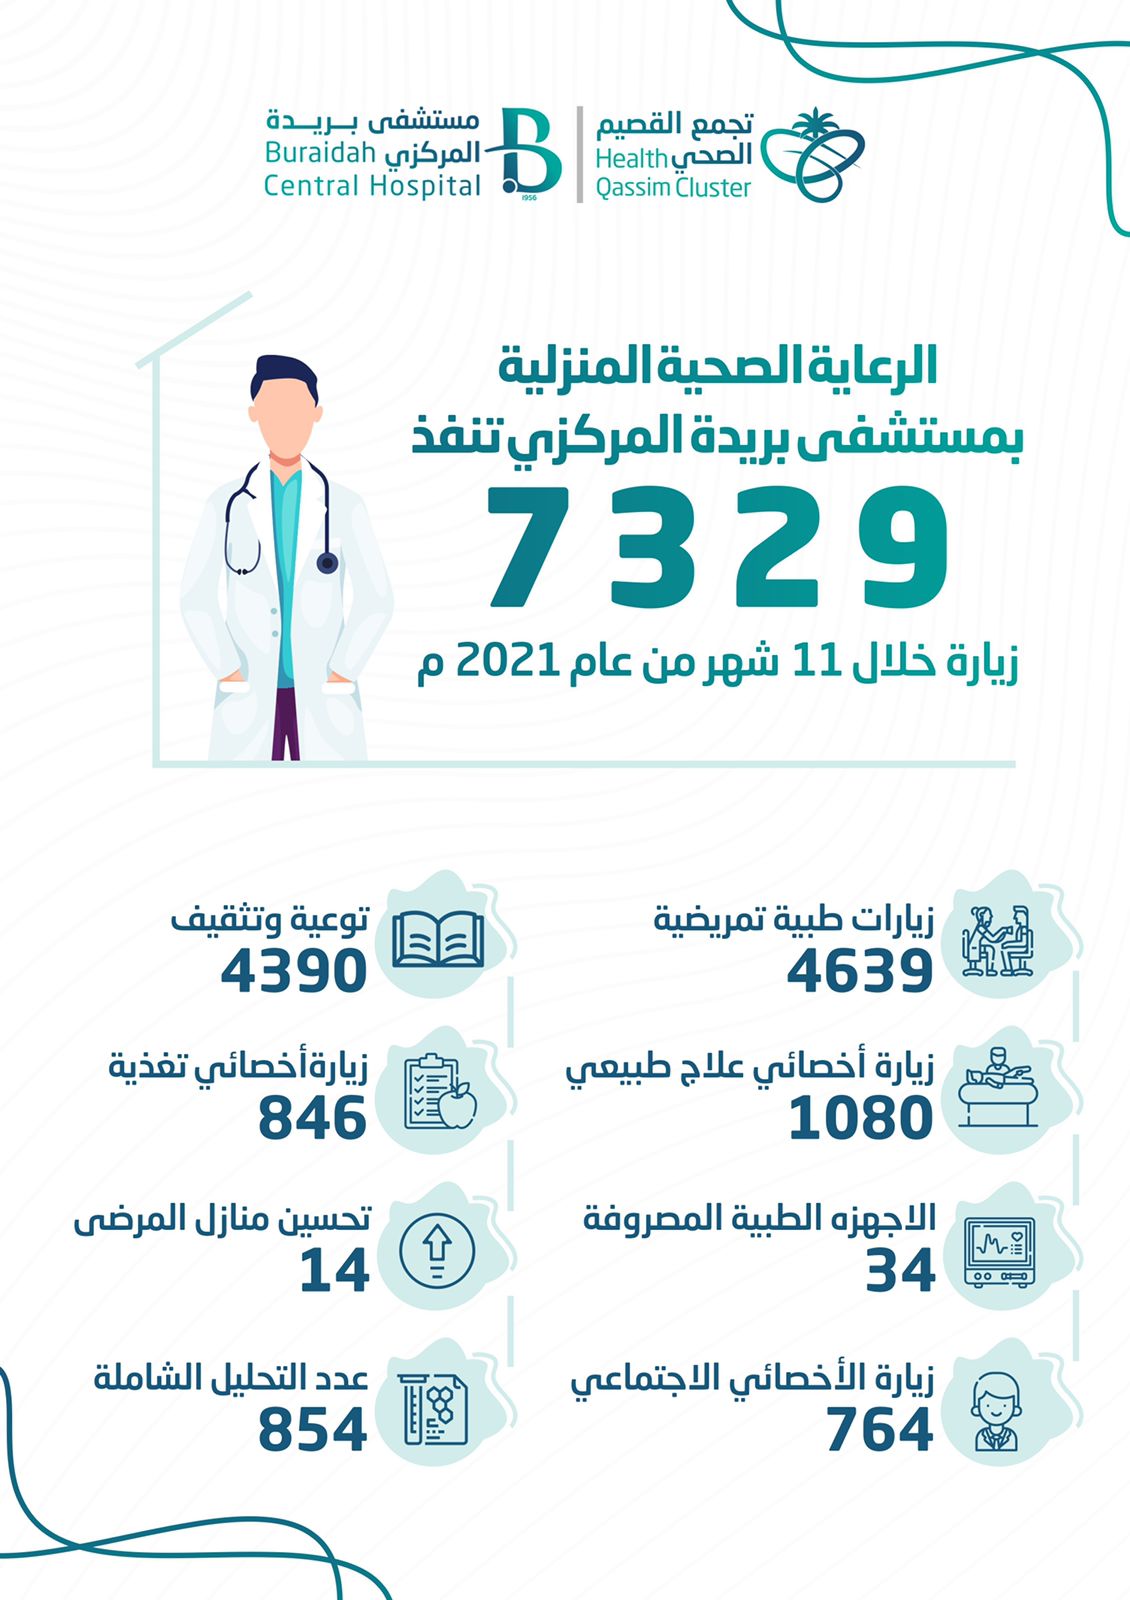 الرعاية المنزلية بمستشفى بريدة المركزي تنفذ 7329 زيارة خلال 11 شهر لعام 2021م